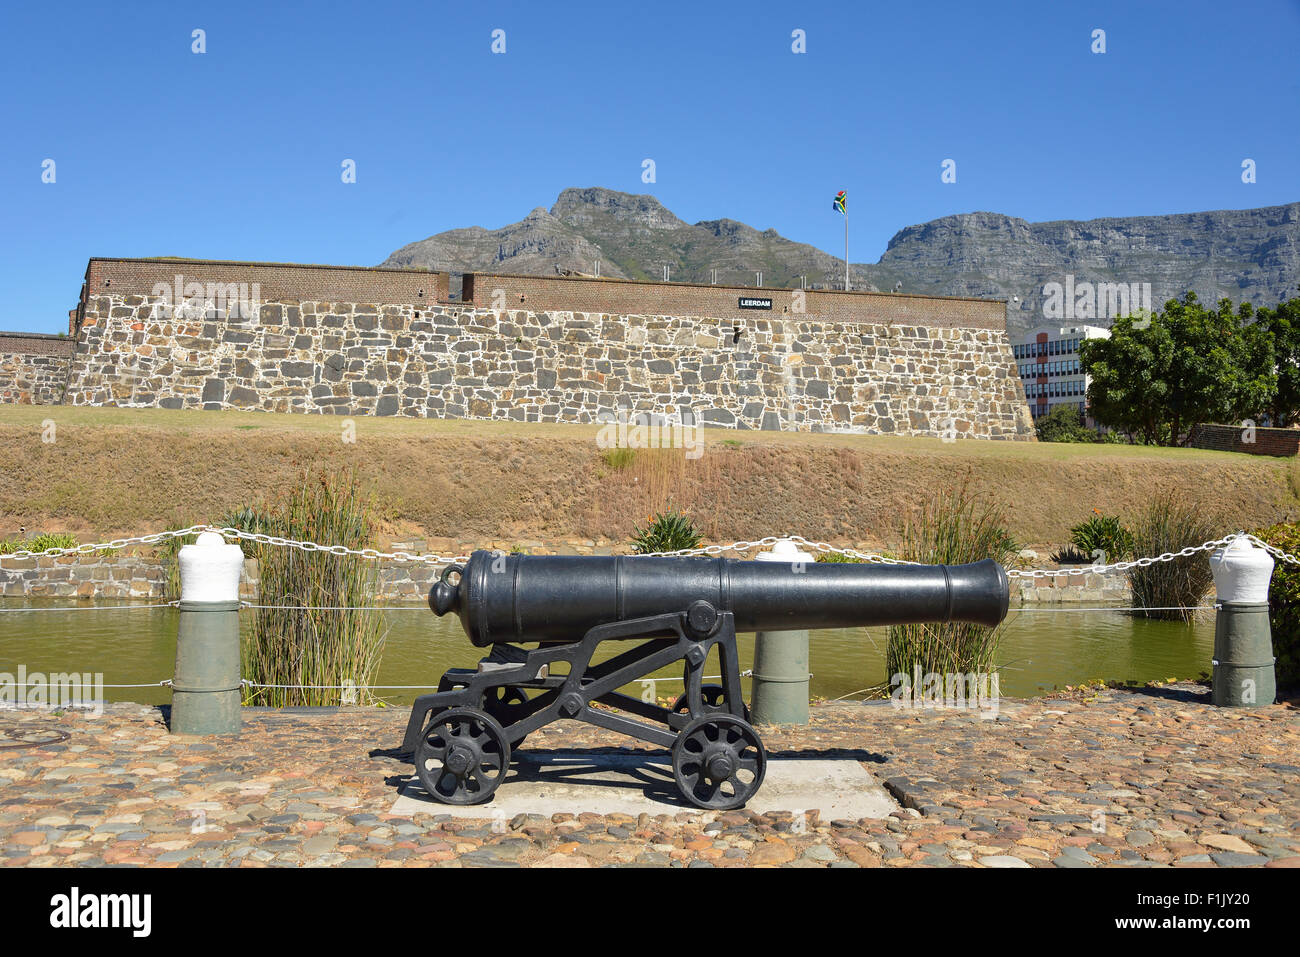 Castello di Buona Speranza (Kasteel die Goeie Hoop), Buitenkant Street, Città del Capo, Provincia del Capo occidentale, Repubblica del Sud Africa Foto Stock